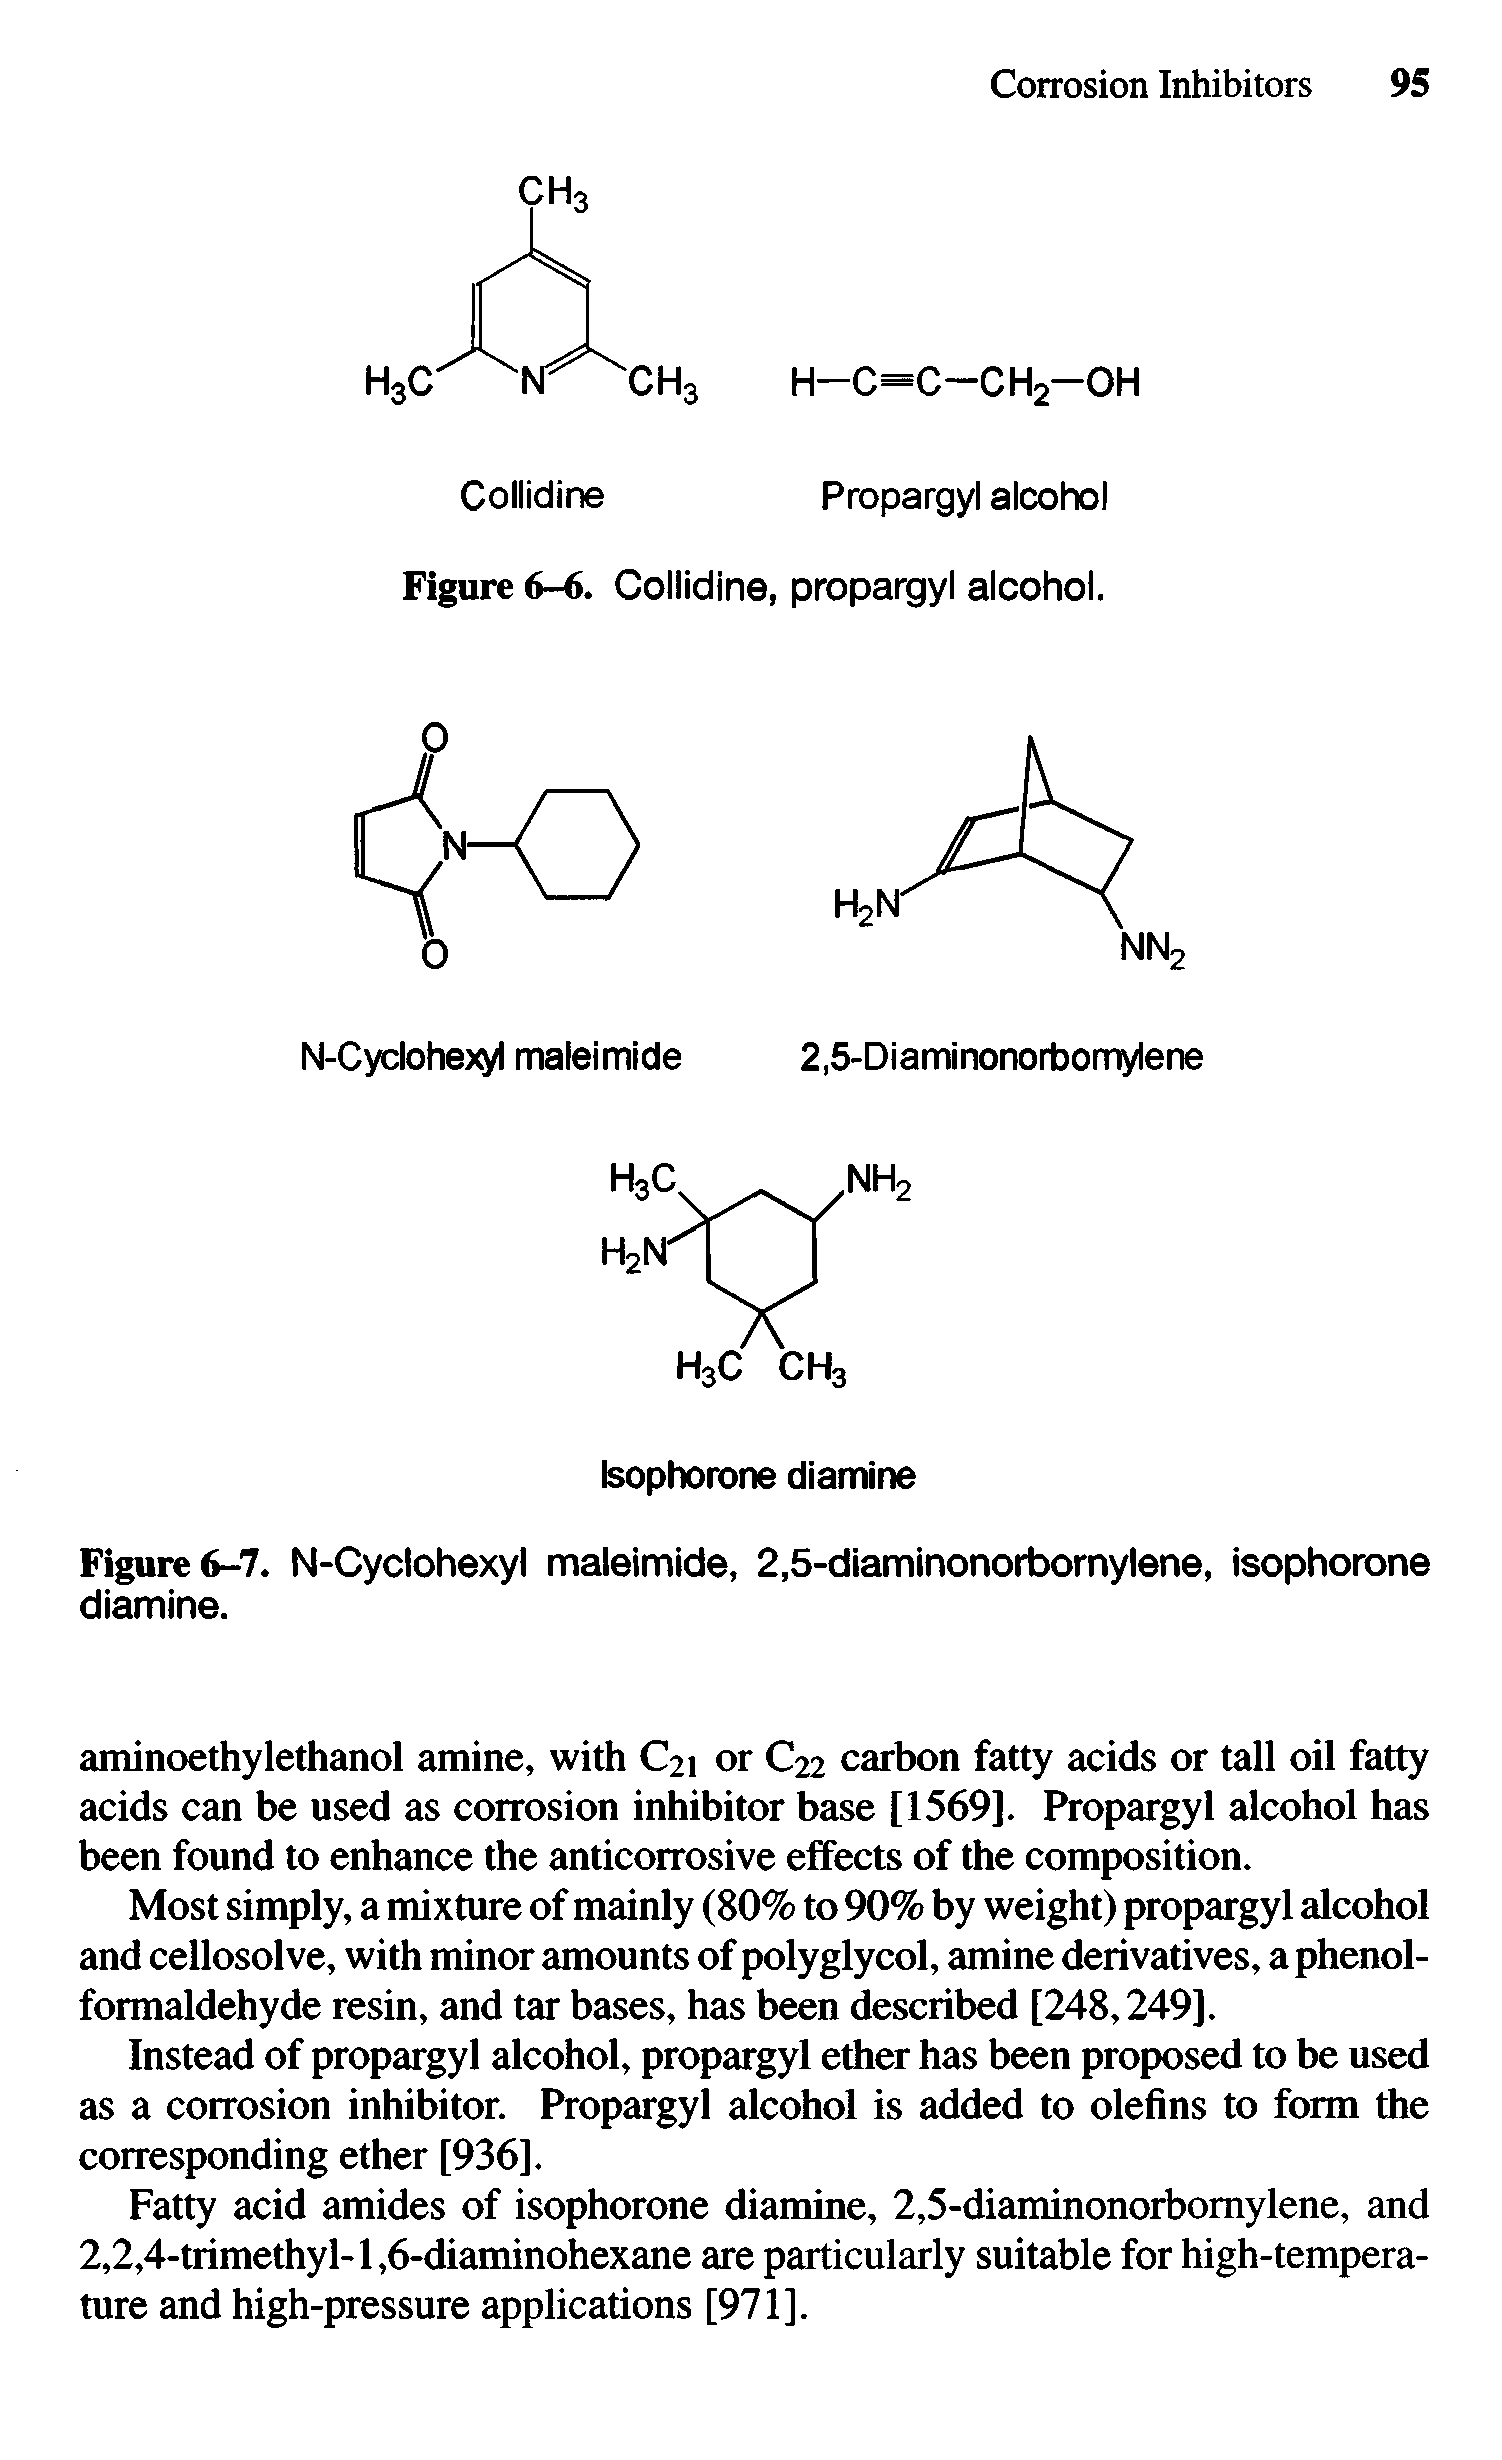 Figure 6-7. N-Cyclohexyl maleimide, 2,5-diaminonorbornylene, isophorone diamine.